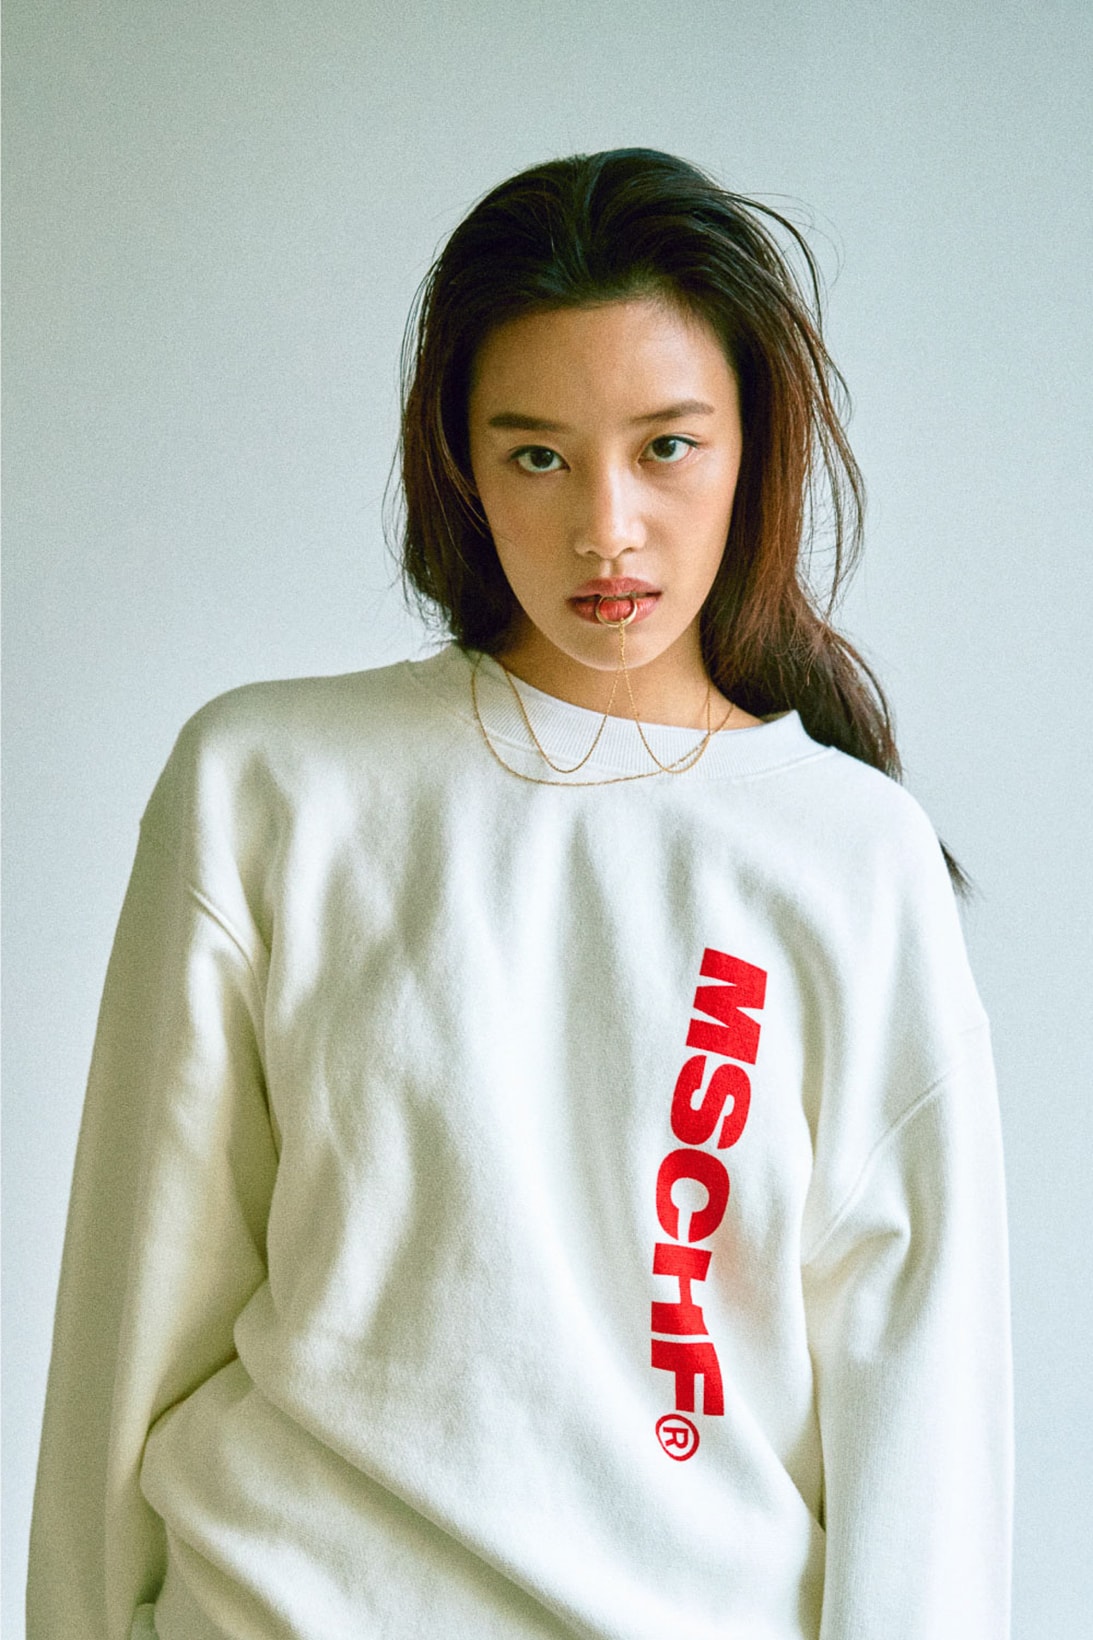 mschf fall winter lookbook streetwear seoul korea fashion bucket hat sweaters pants jackets bags 